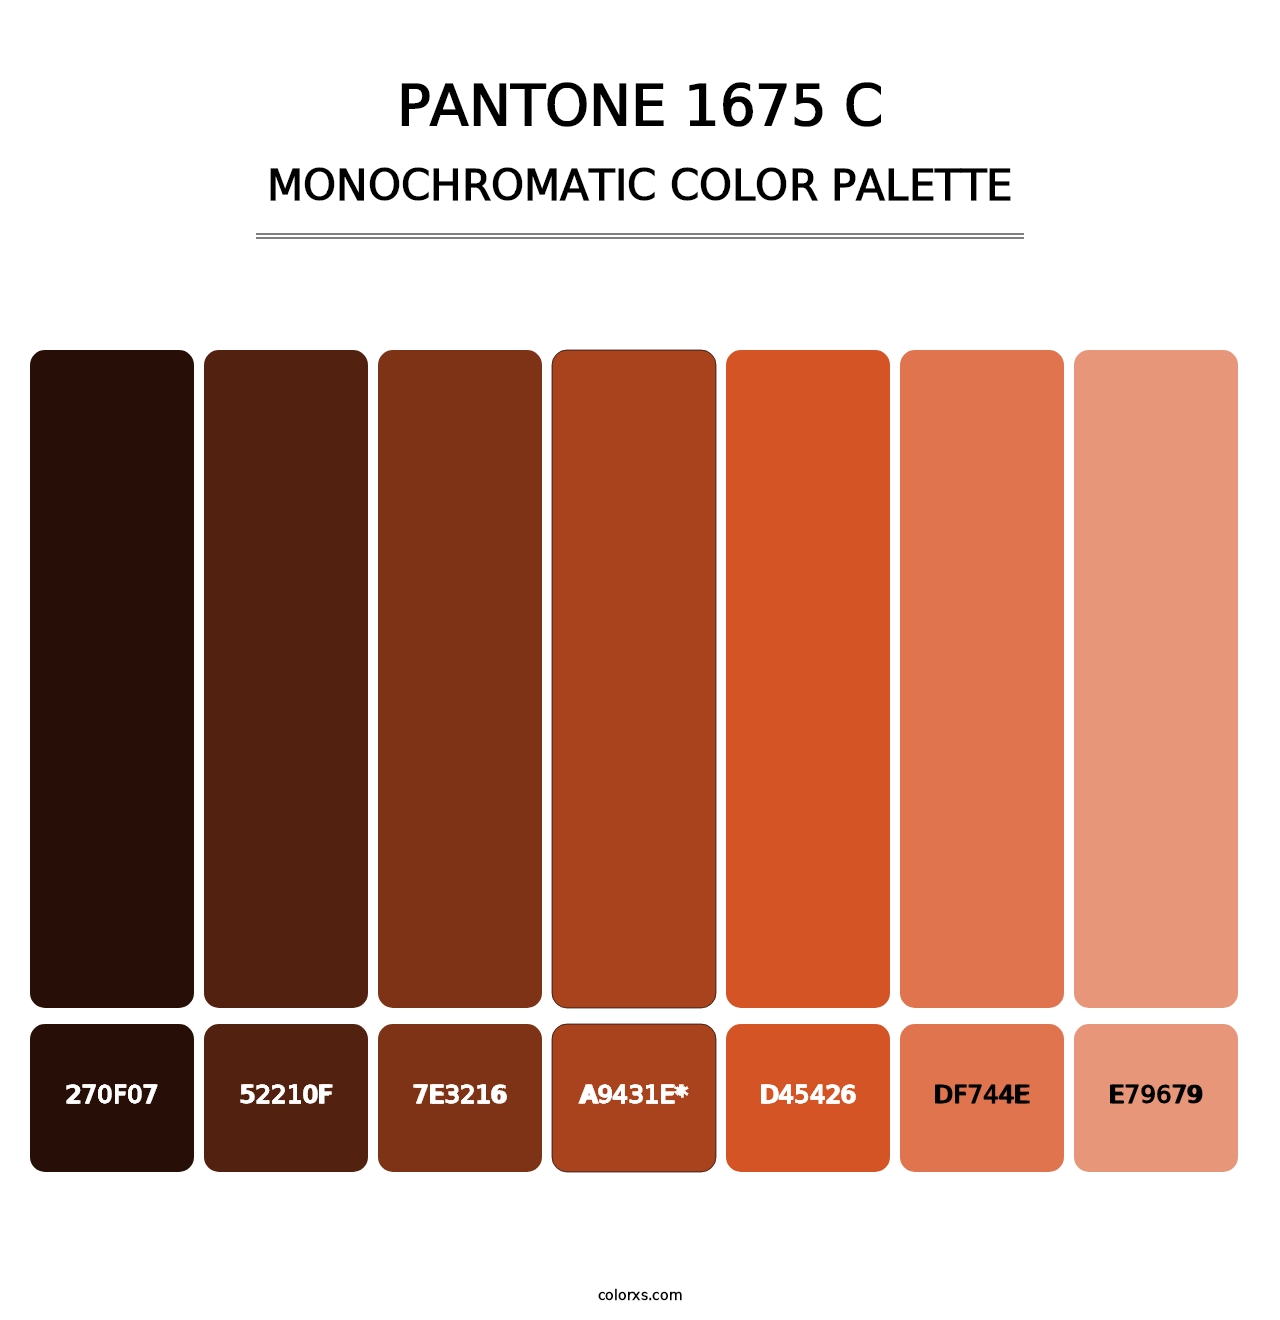 PANTONE 1675 C - Monochromatic Color Palette